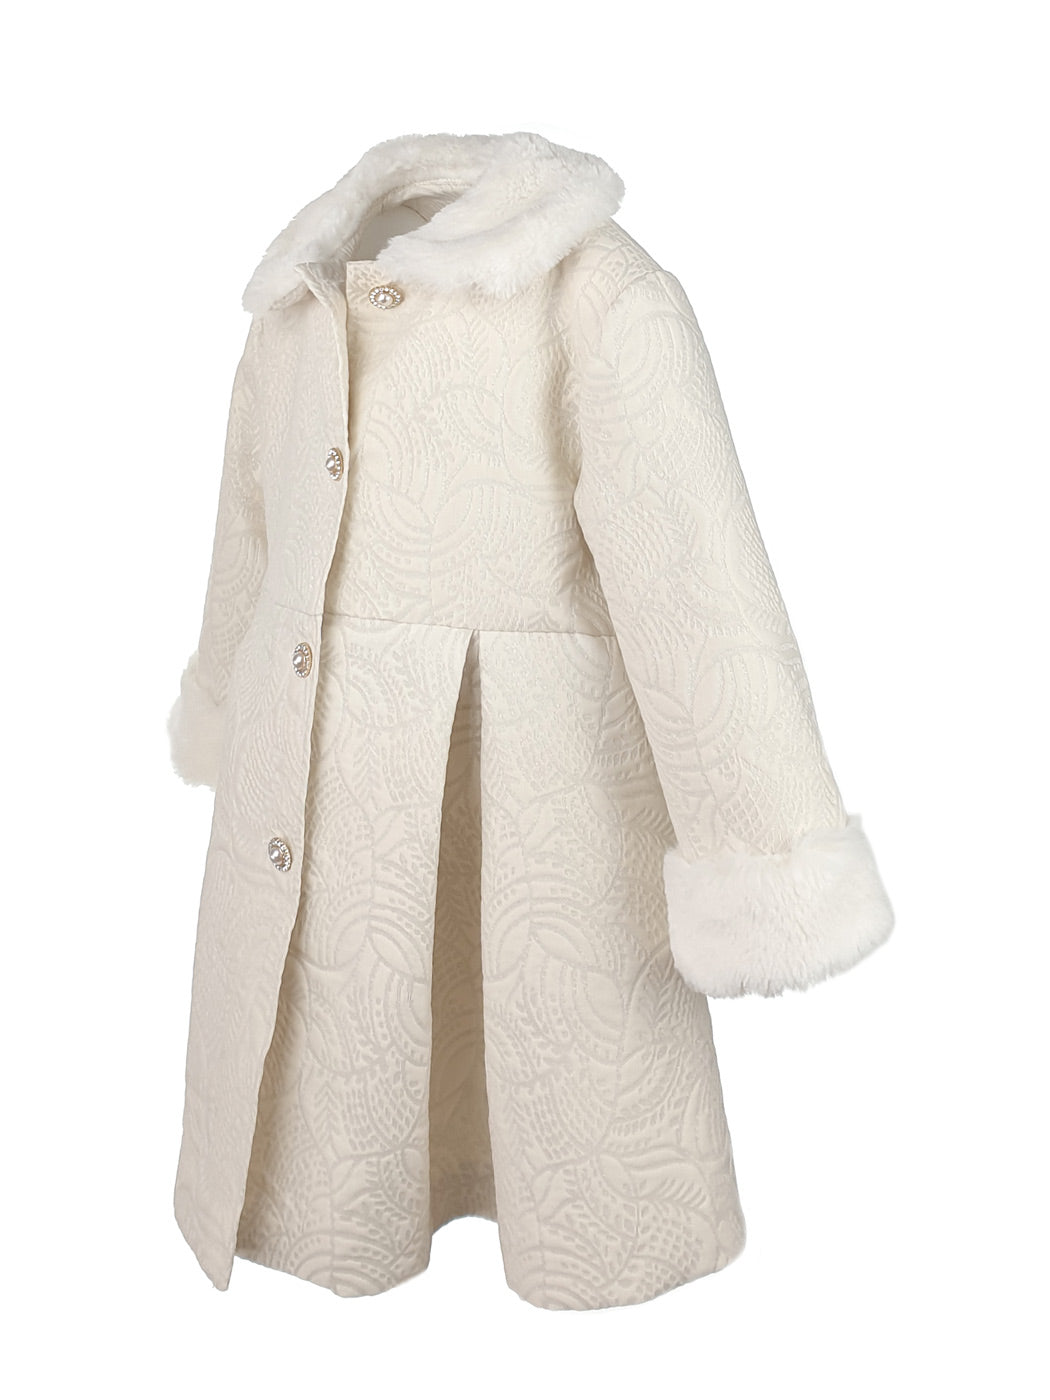 Βρεφικό παλτό μπροκάρ με γούνινο γιακά  - EDUARDA